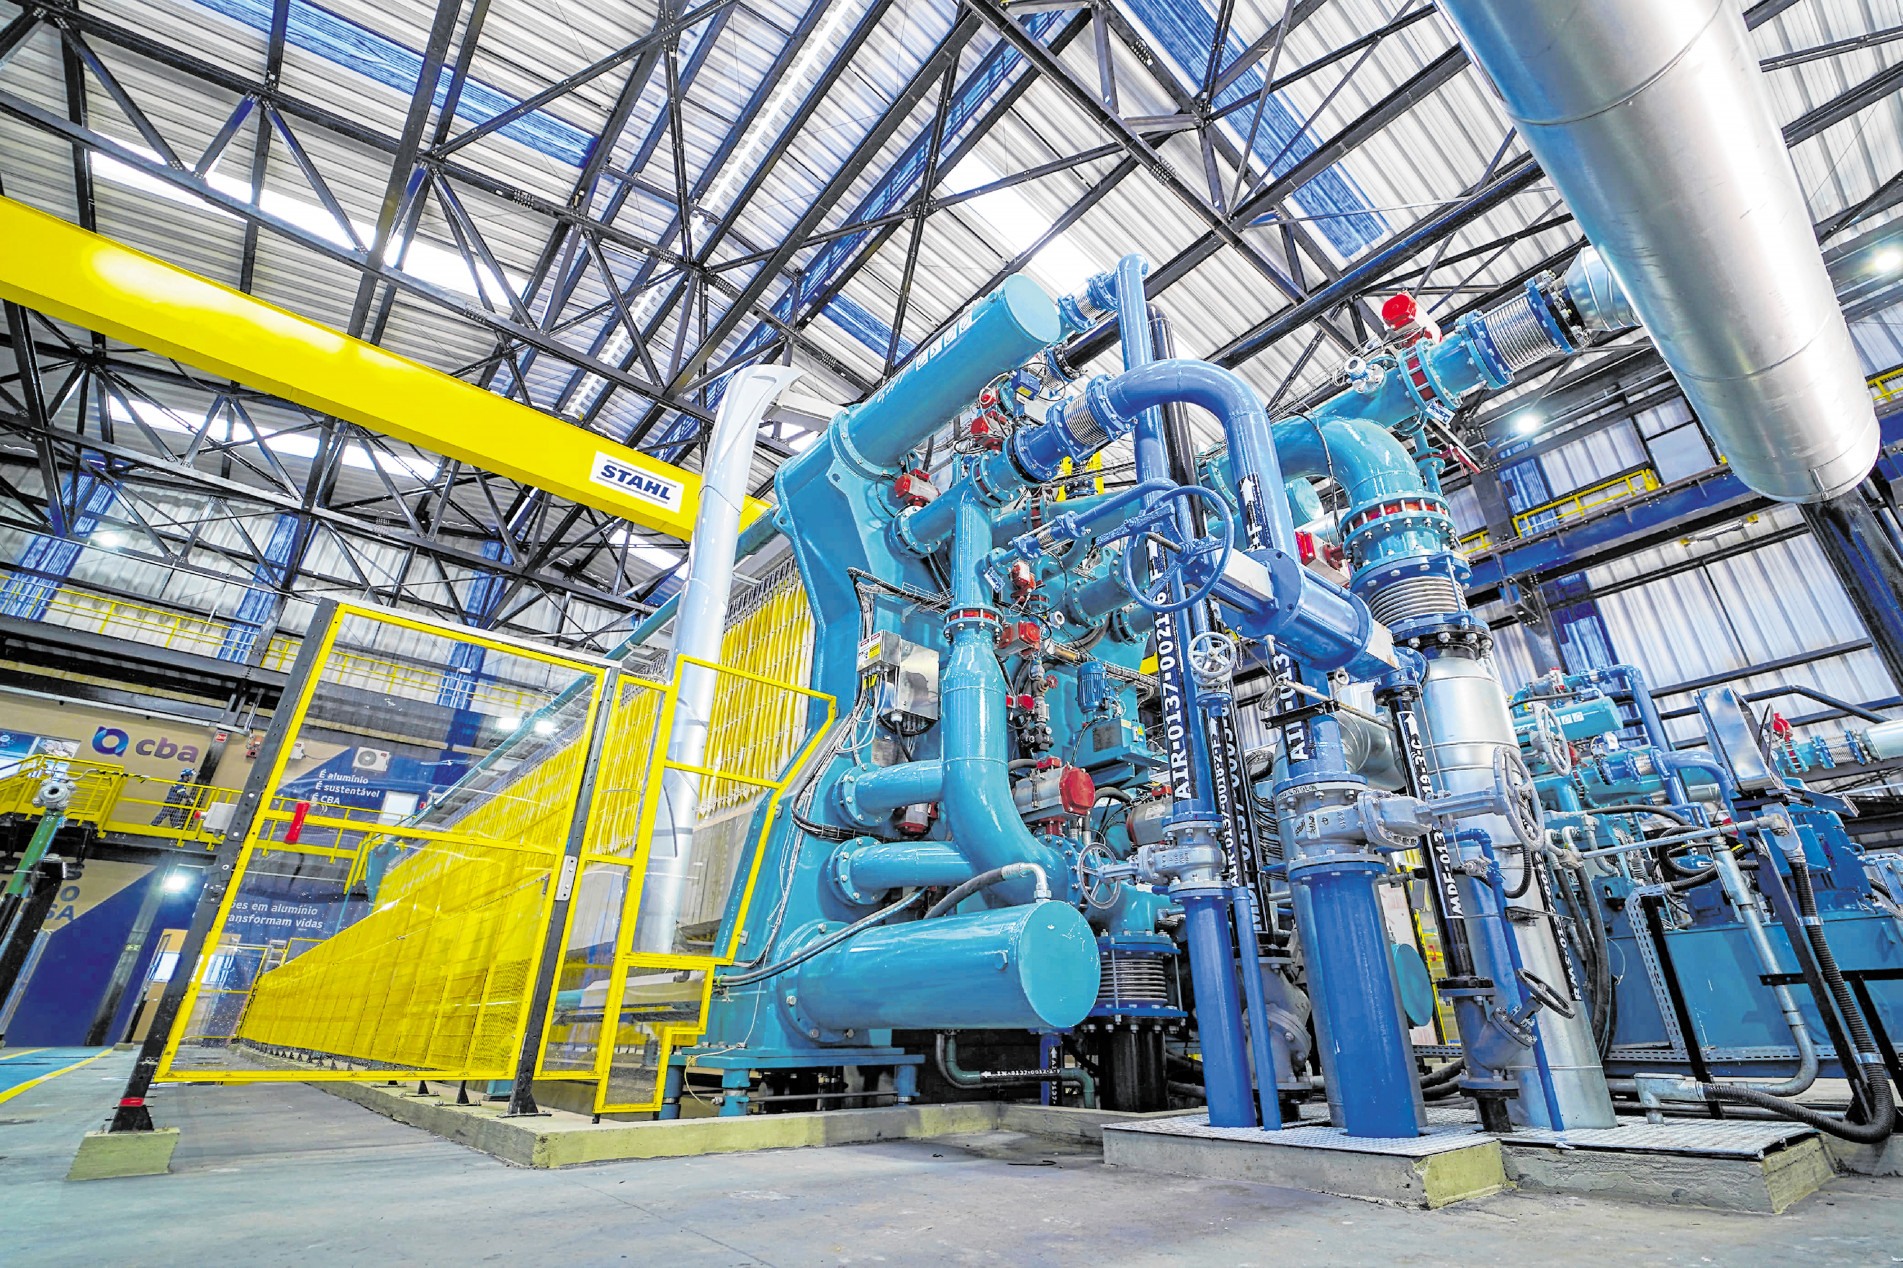 Juntas, as três máquinas conseguem filtrar até 110 toneladas de sobras industriais por hora
